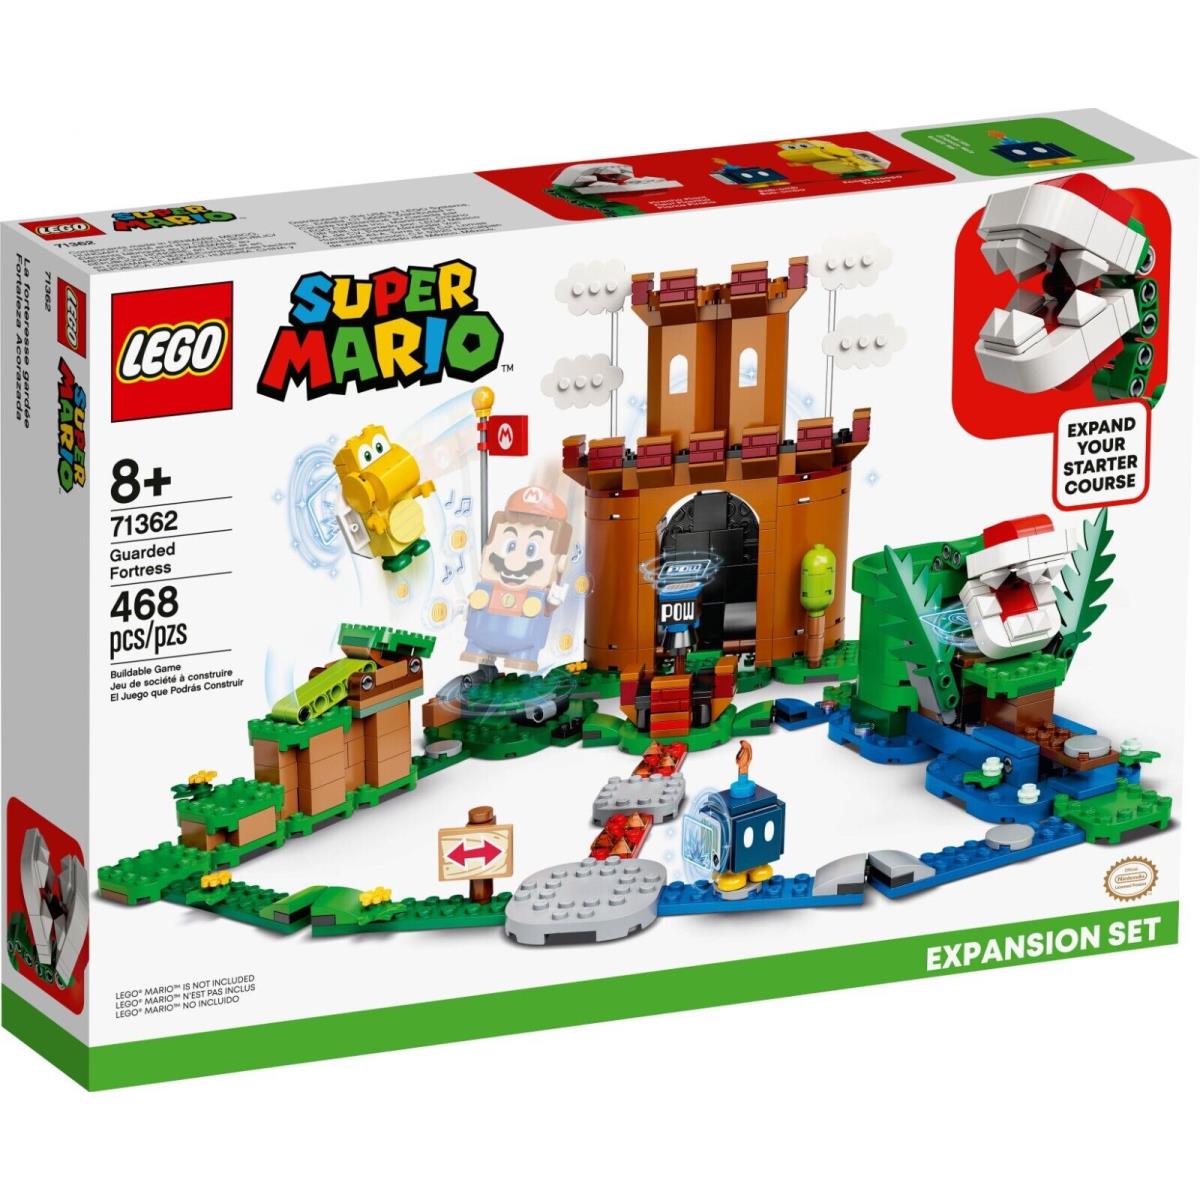 Lego 71362 Guarded Fortress Super Mario Box Retired